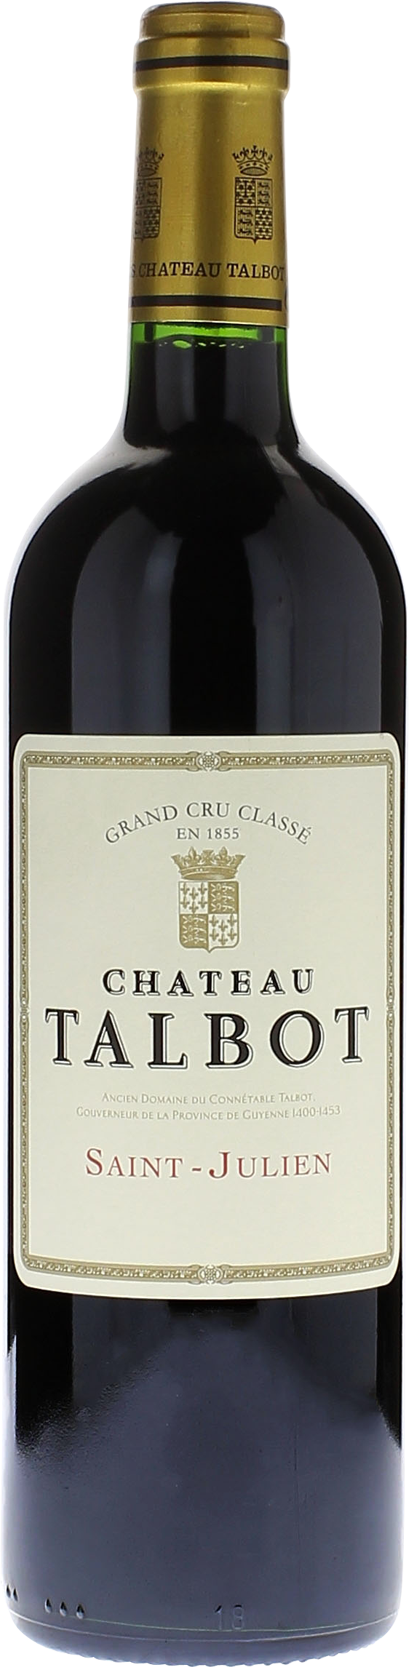 Talbot 1999